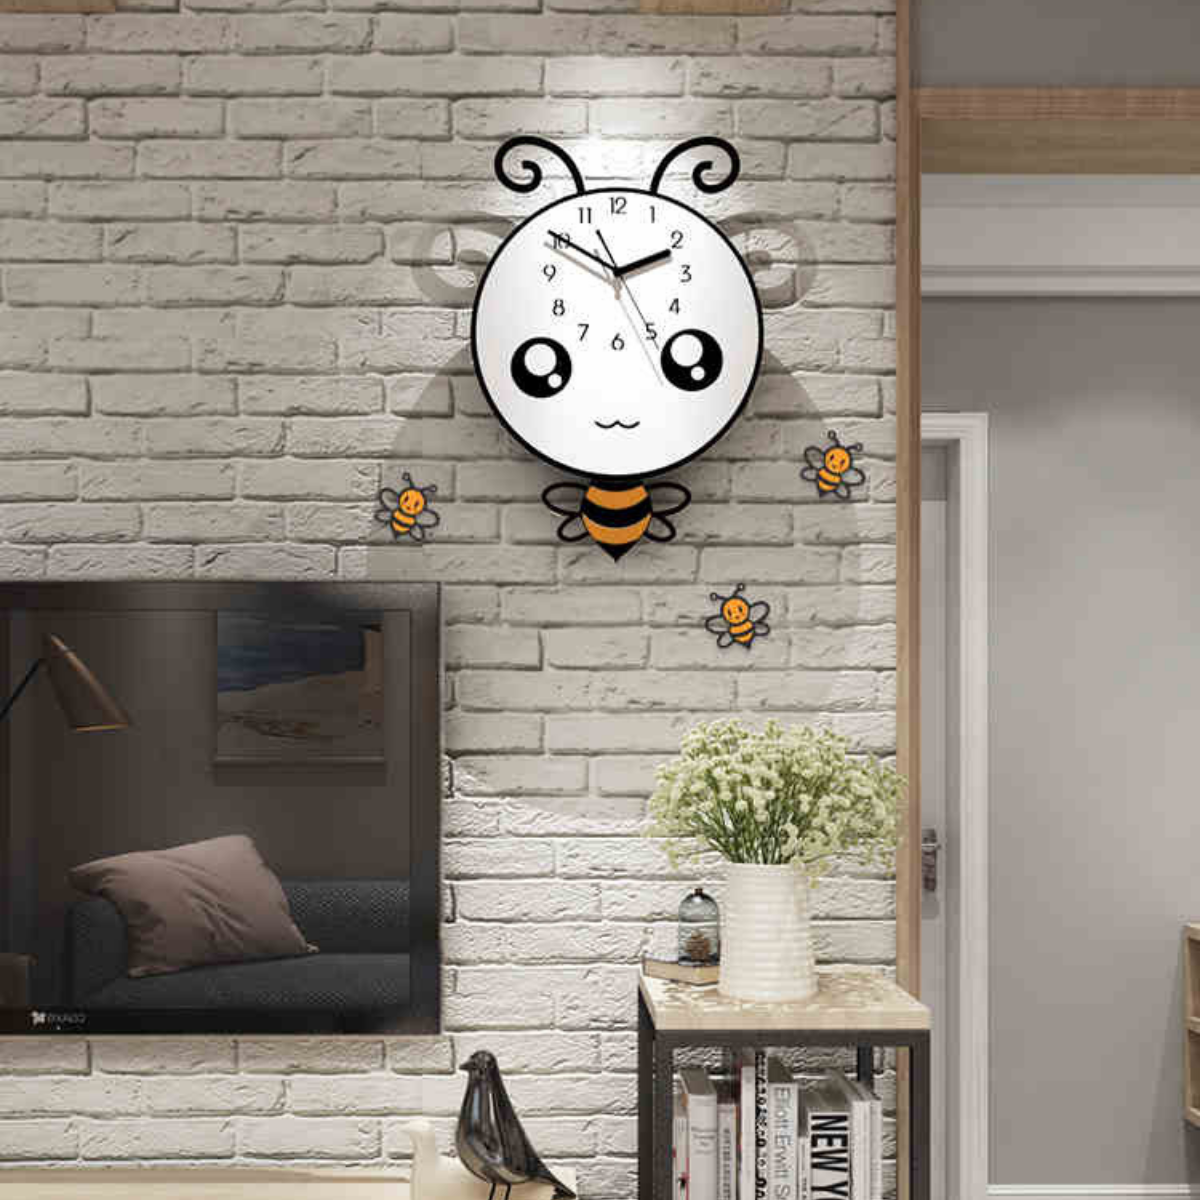 Đồng hồ trang trí hoạt hình dễ thương - KHÔNG CẦN KHOAN TƯỜNG - Tặng kèm 3 con ong nhỏ như hình, pin và  kim thay thế